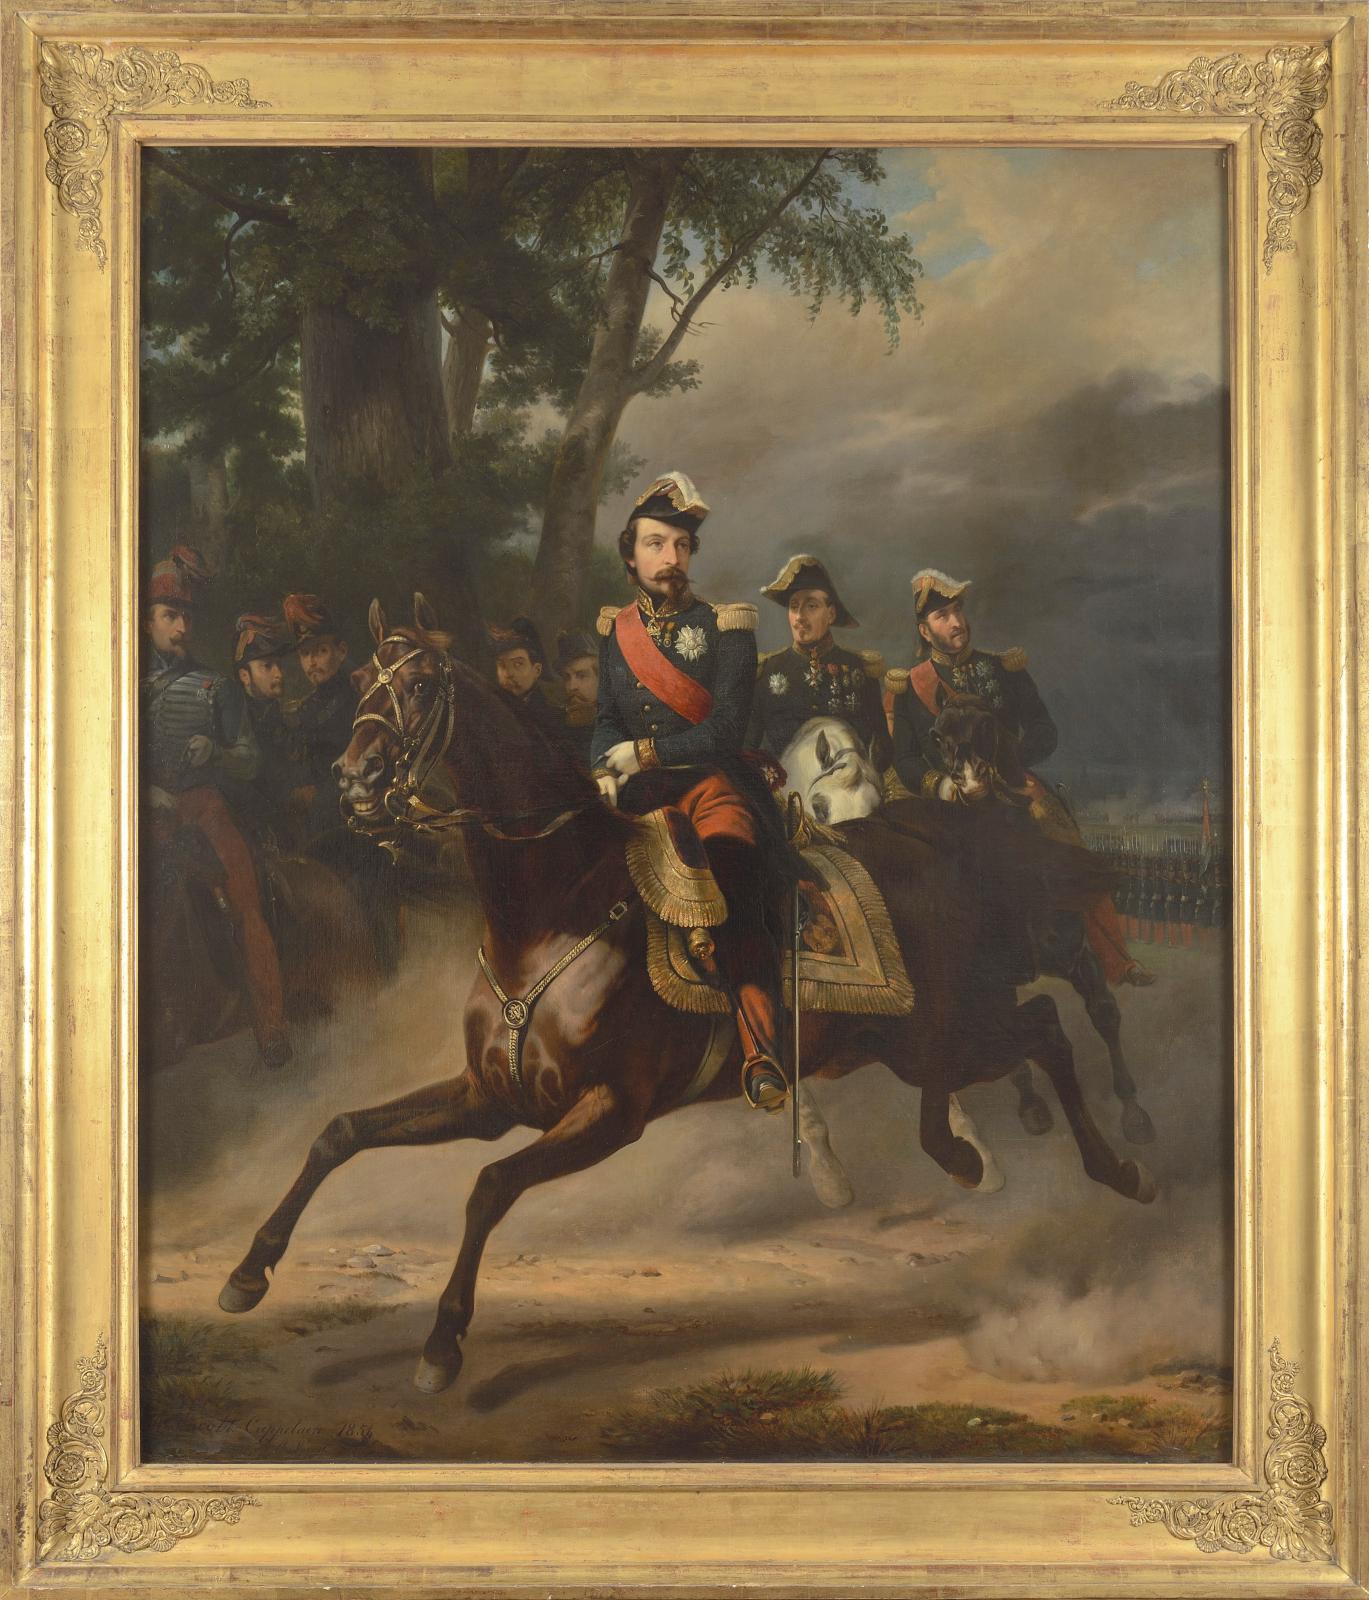 Le souvenir de Napoléon III était également au rendez-vous le dimanche 7 juillet, grâce à cette toile (161 x 135 cm) qui proviendrait de son chalet de